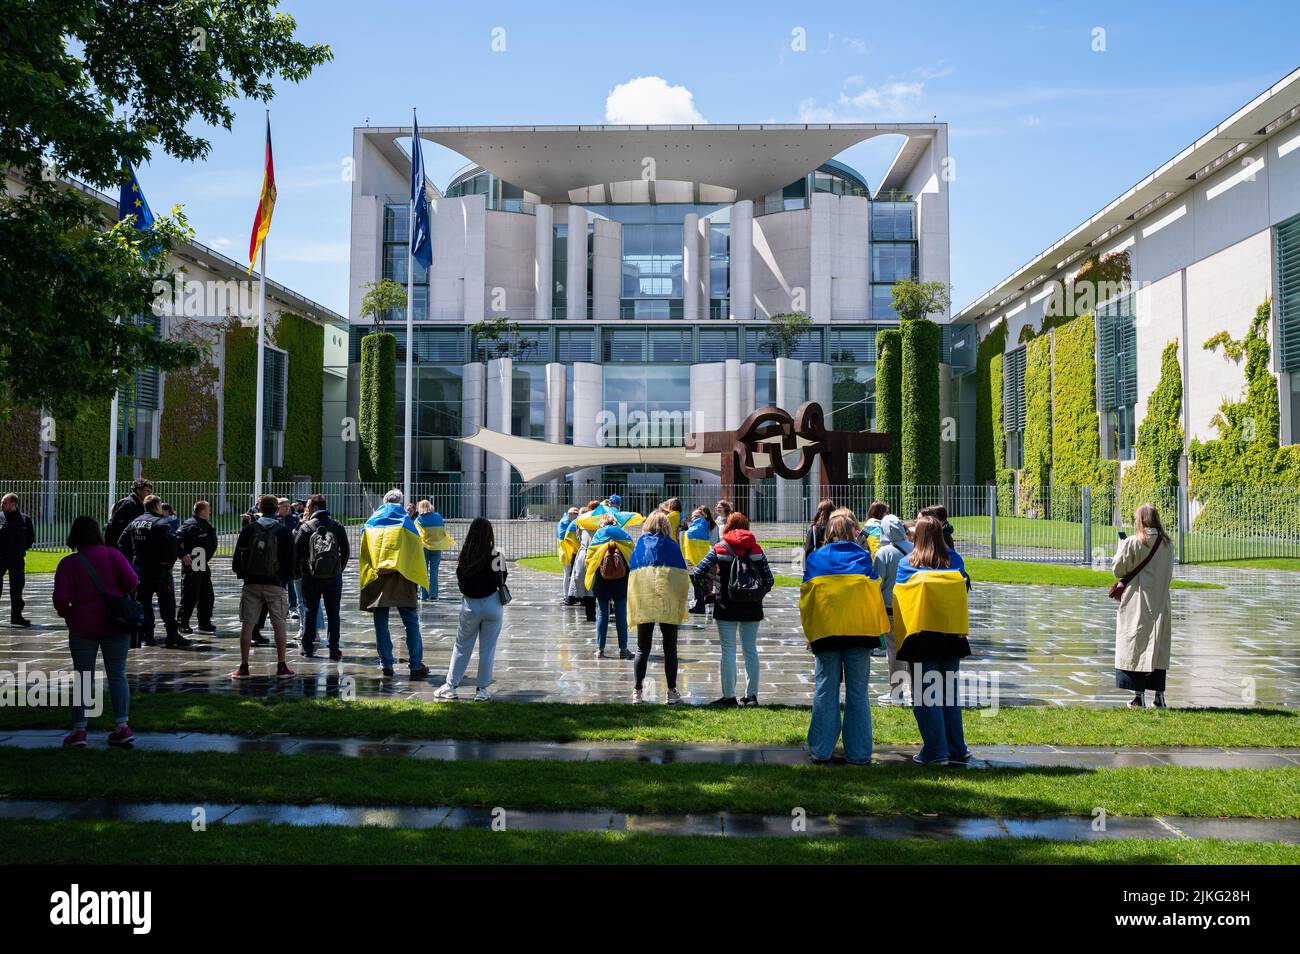 28.05.2022, Germania, Berlino, Berlino - Europa - Una manifestazione di protesta pacifica con ucraini, rifugiati, attivisti e sostenitori di fronte al Cha tedesco Foto Stock